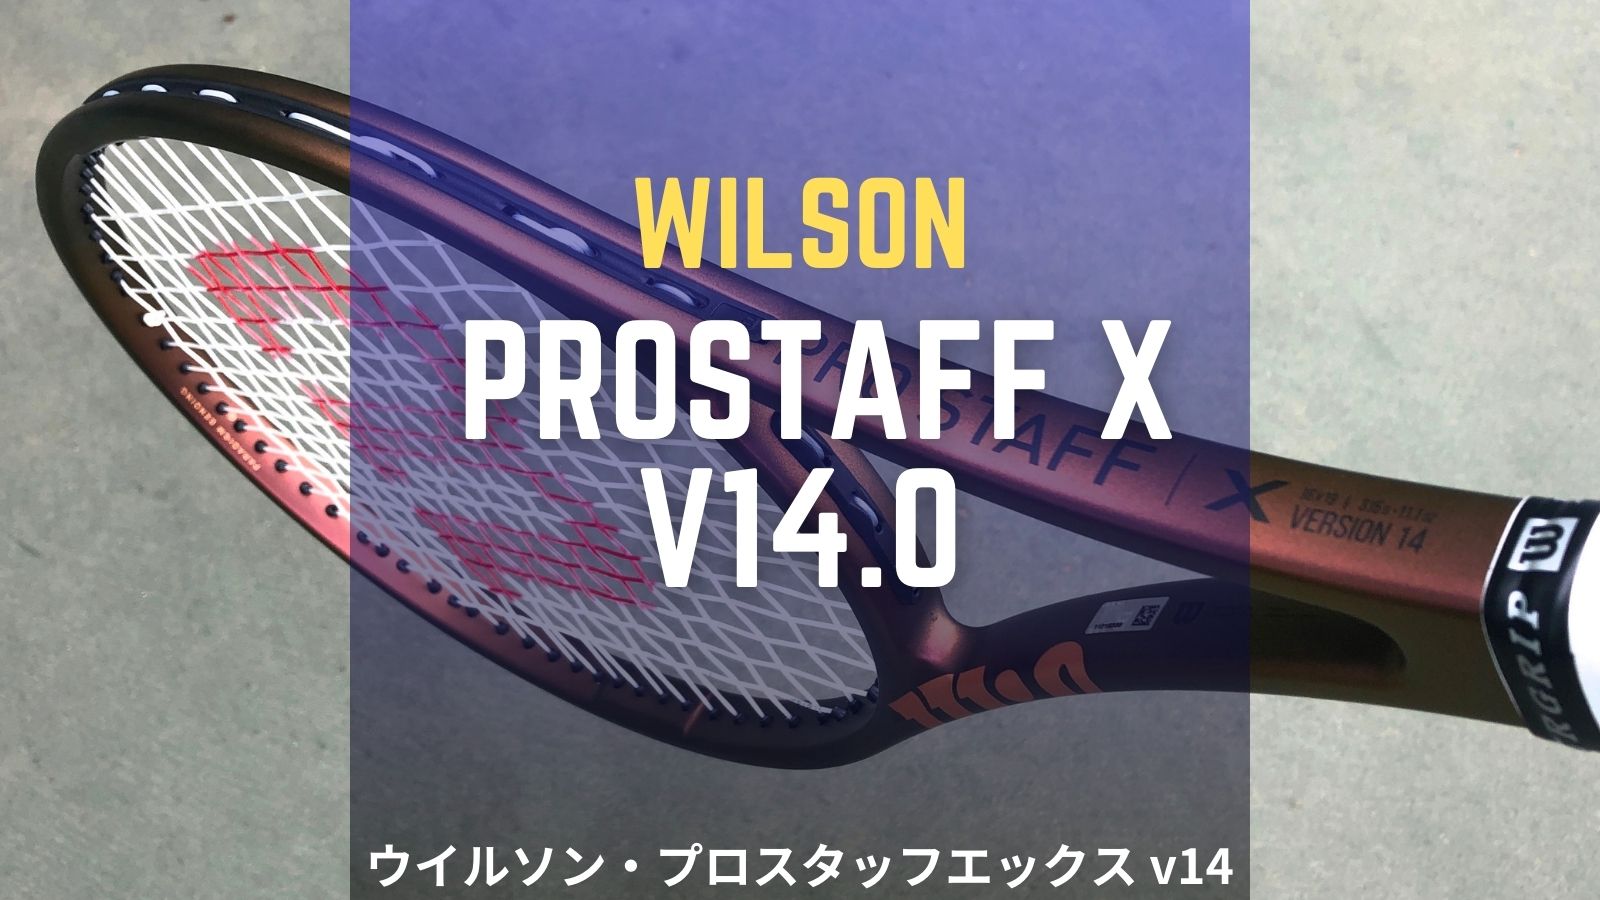 ウイルソン・プロスタッフエックス v14.0をインプレ/レビュー！Wilson 